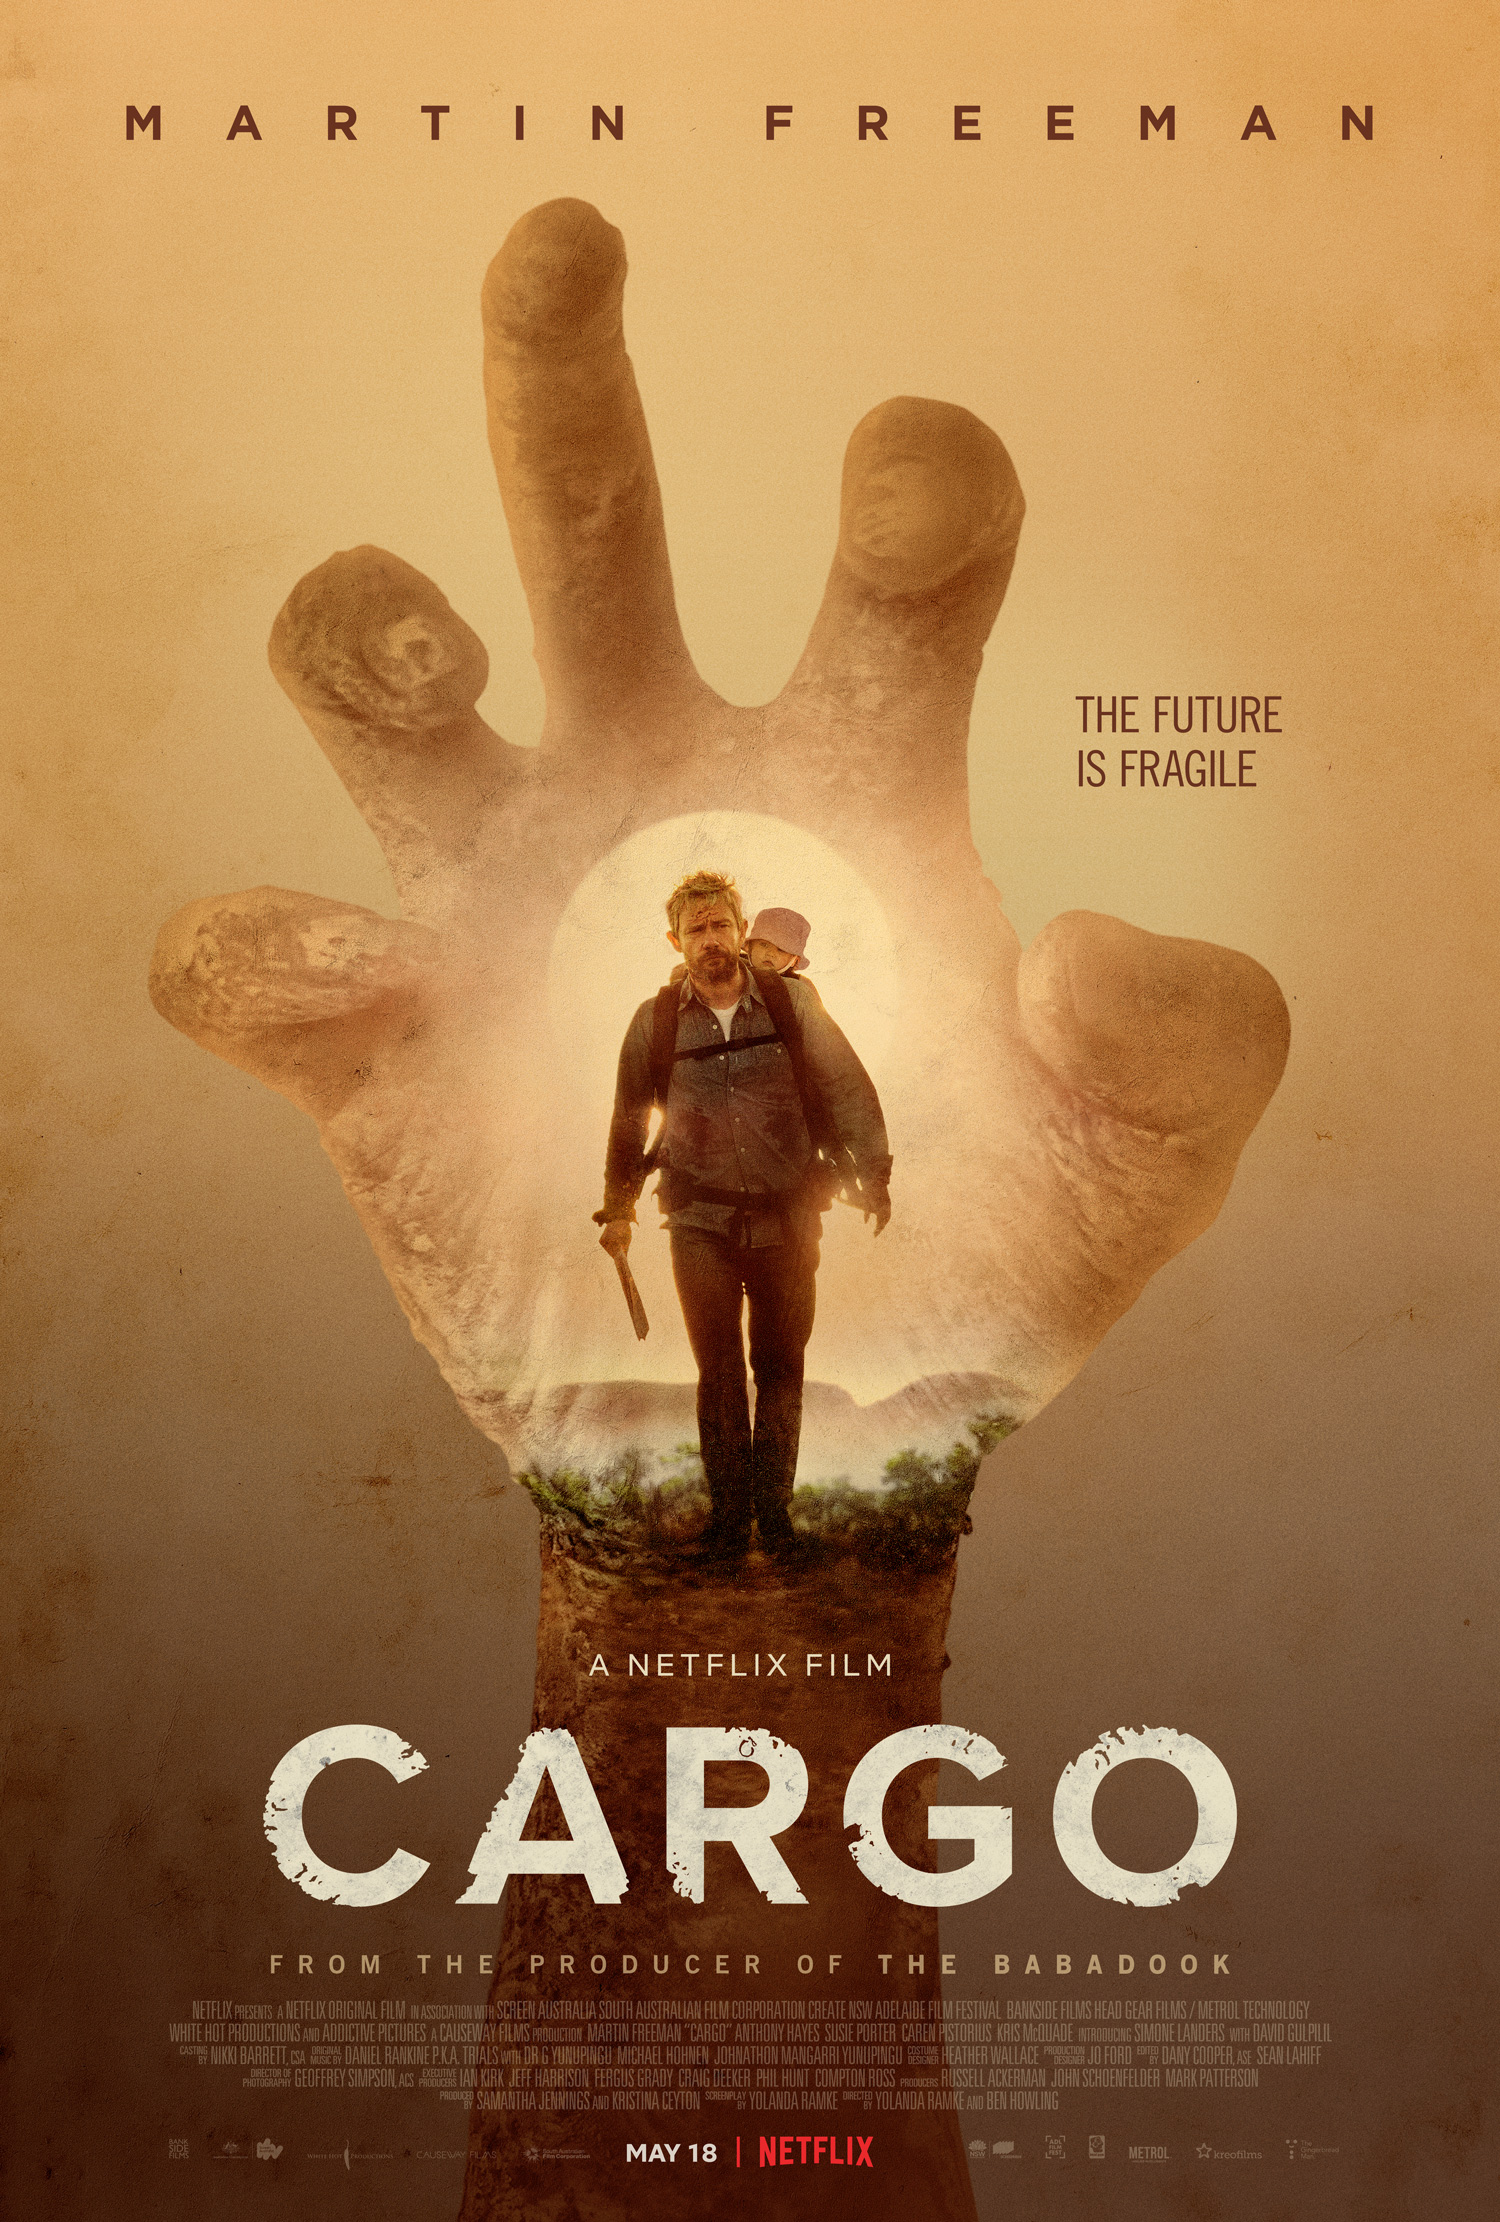 cargo movie trailer